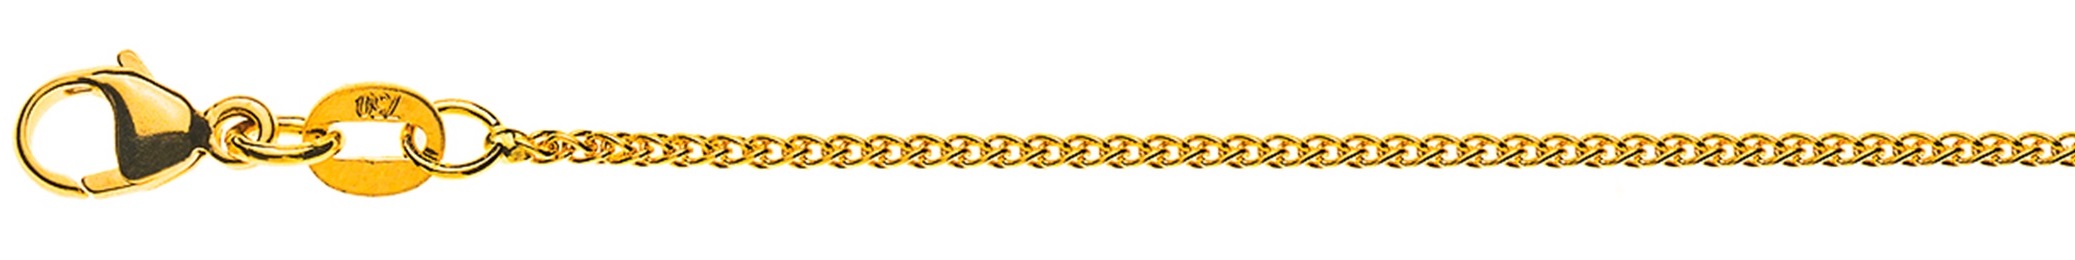 AURONOS Élégance Halskette Gelbgold 14K Zopfkette 50cm 1.2mm